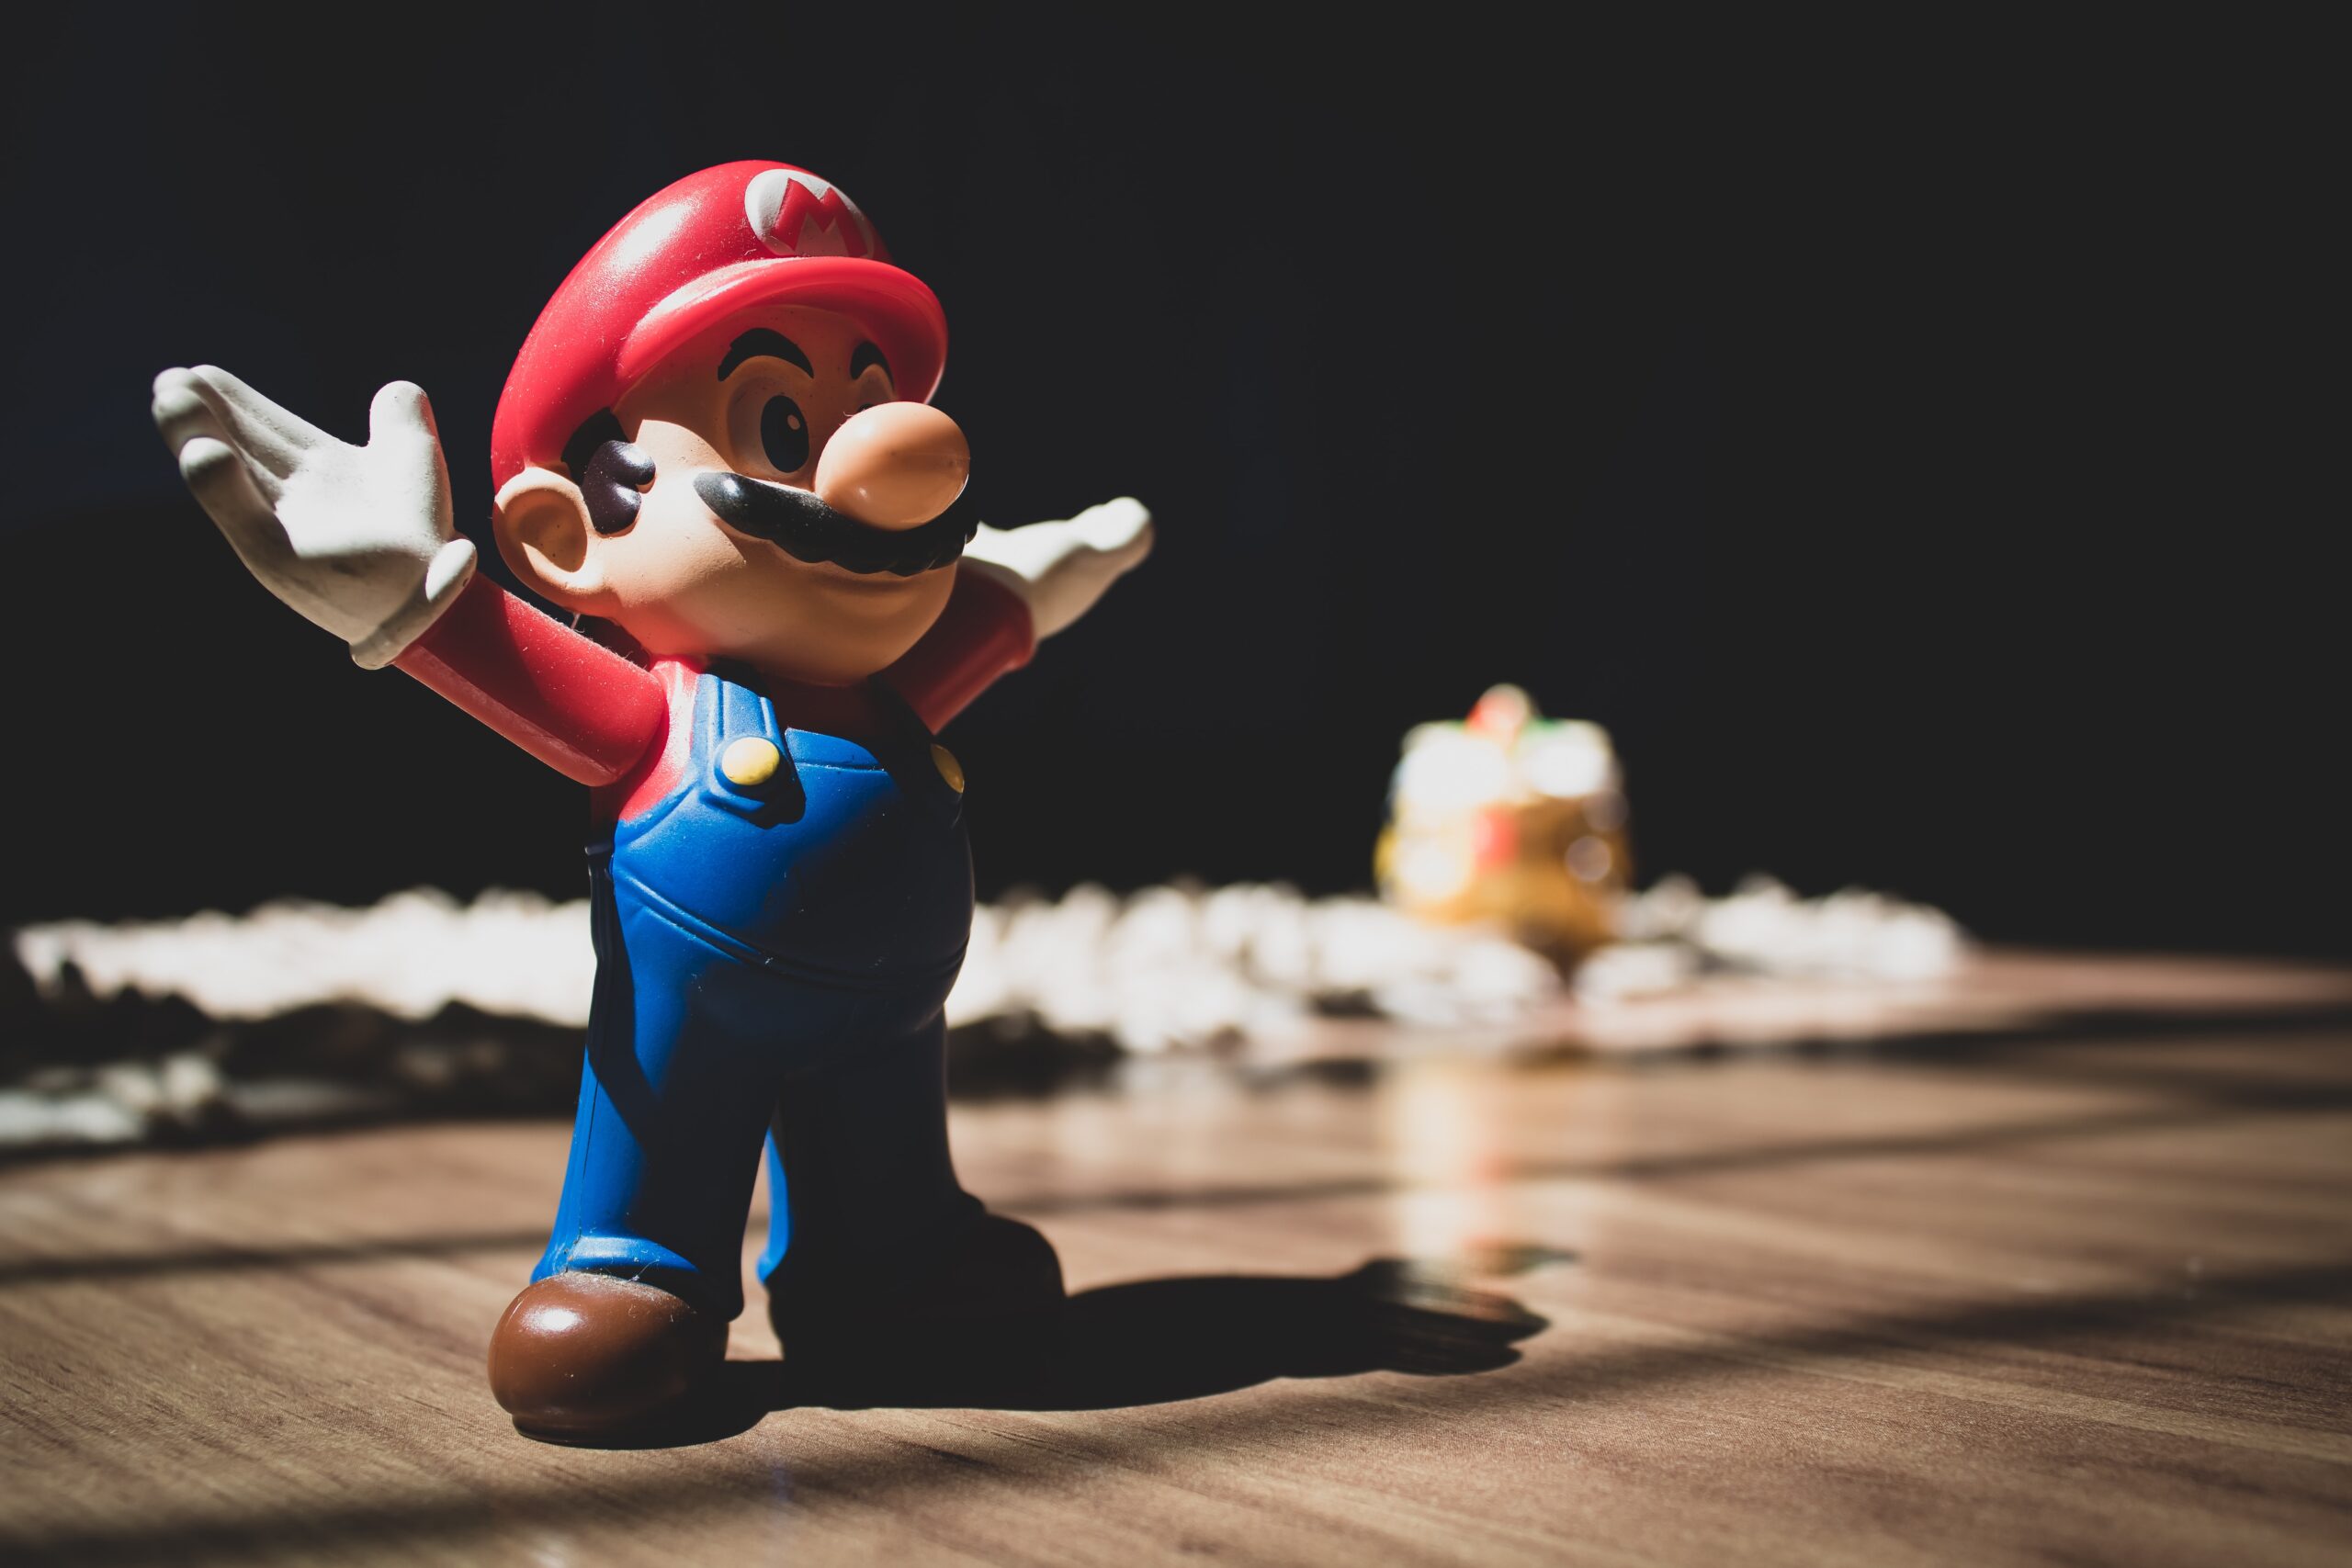 Mario action figure